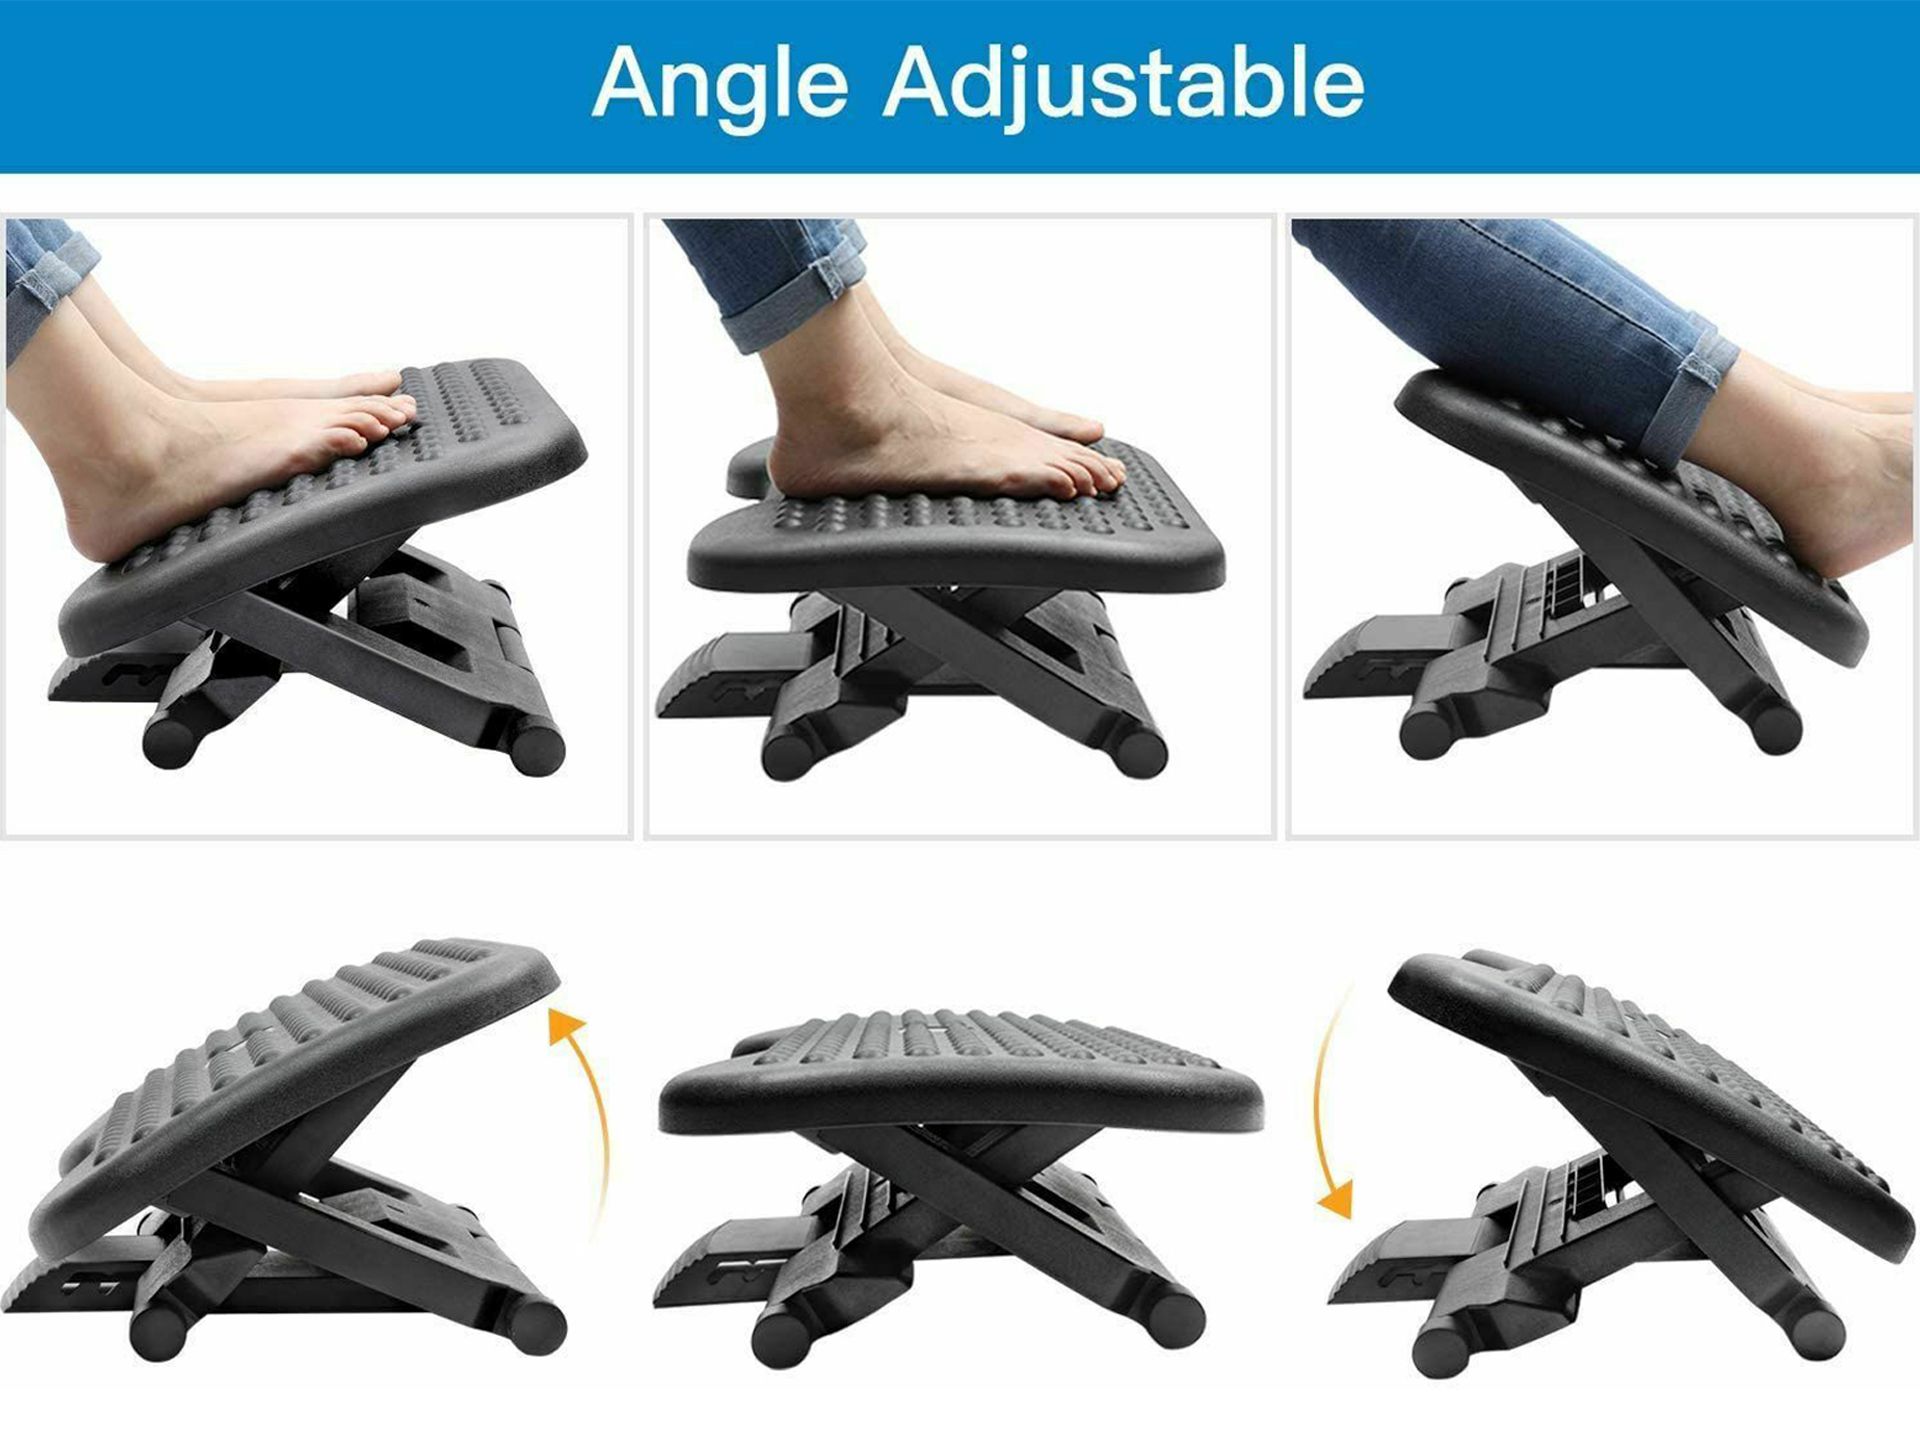 HUANUO Adjustable Under Desk Footrest, Foot Rest for Under Desk at Work with Massage, Foot Stool Under Desk with 3 Height Position 30 Degree Tilt